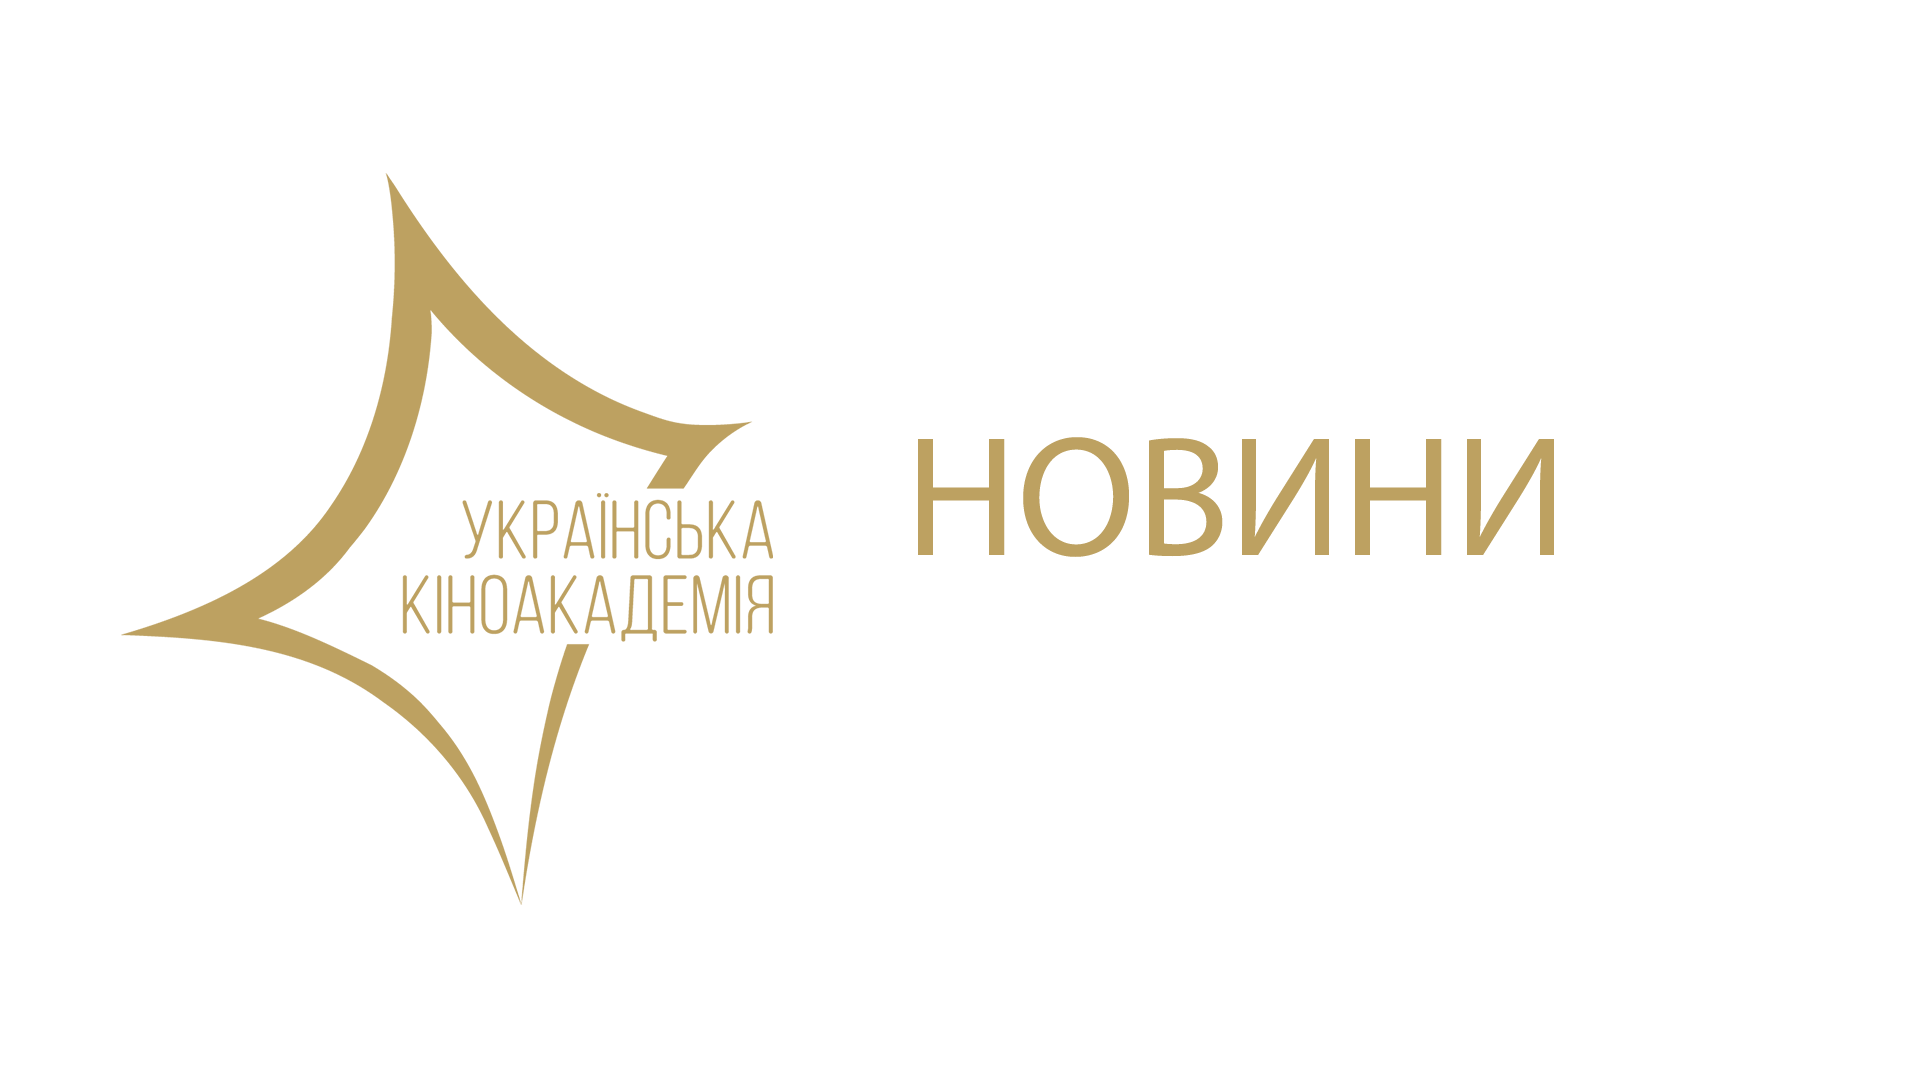 Українська Кіноакадемія звернулася до Прем’єр-міністра Володимира Гройсмана із проханням збільшити державне фінансування національного кіно